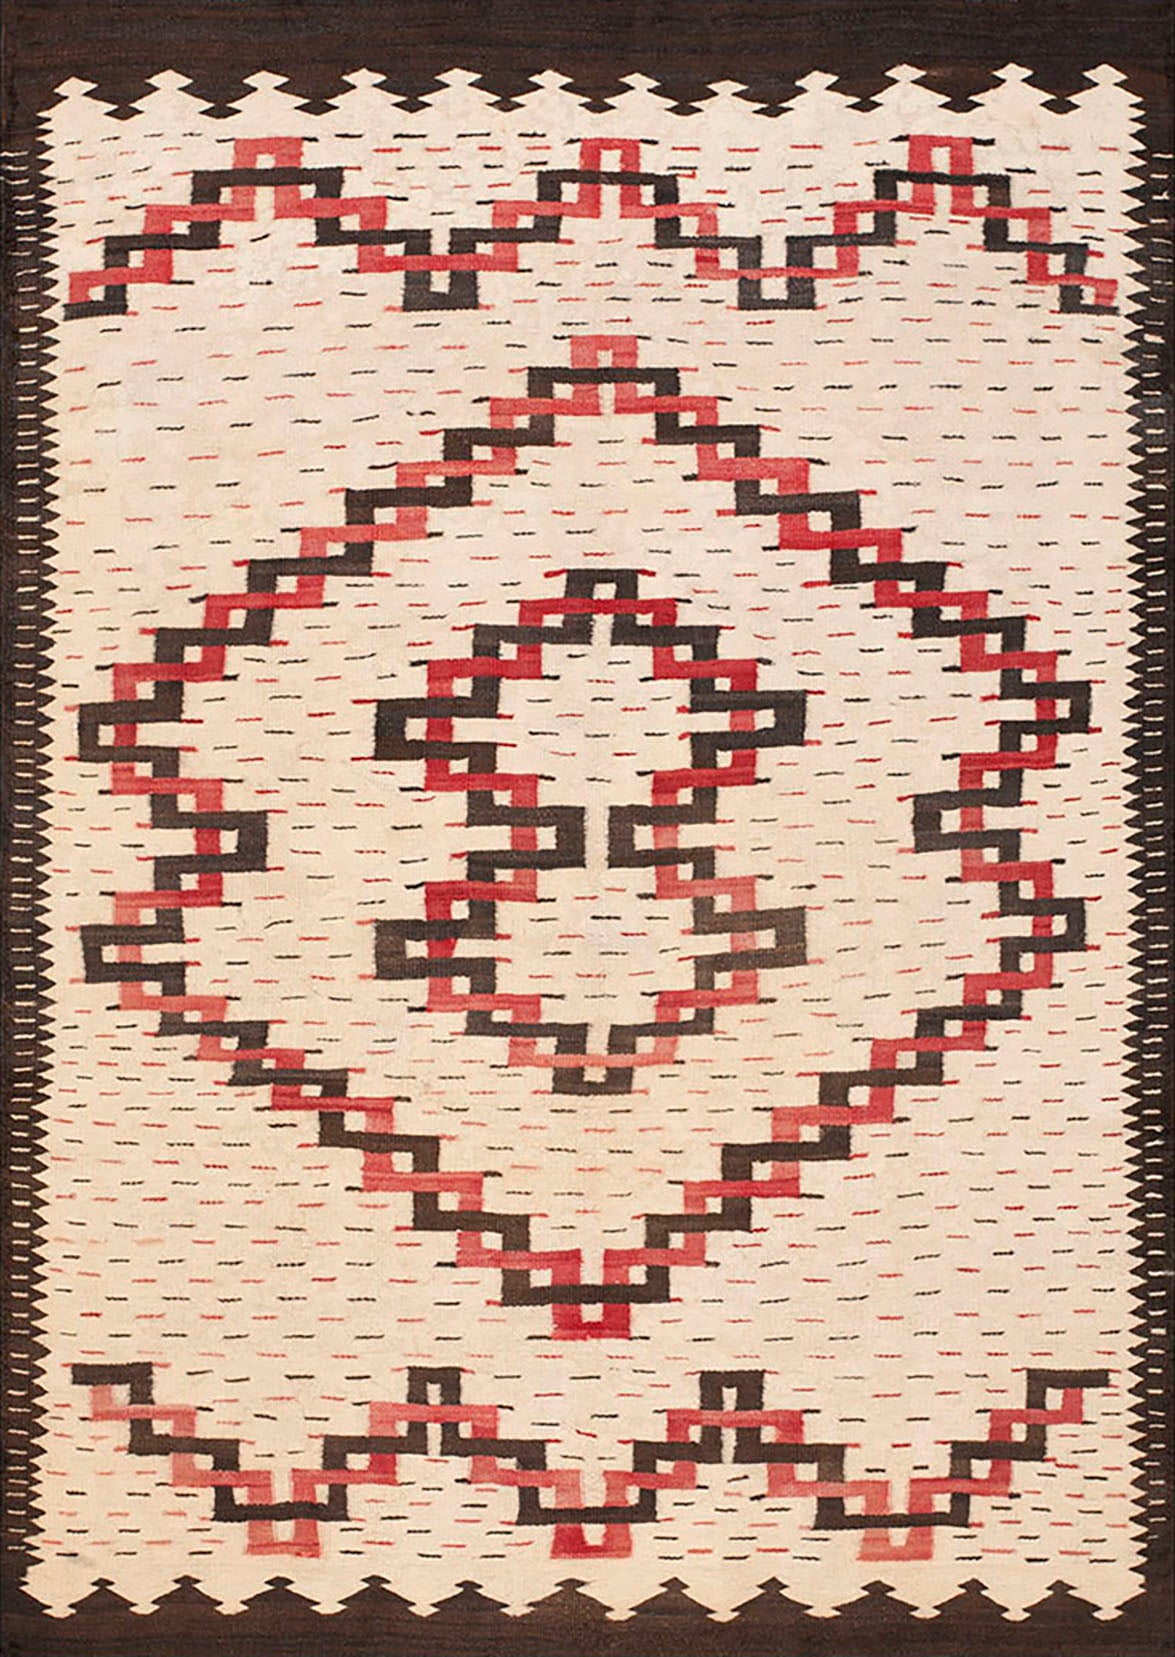 Amerikanischer Navajo-Teppich des frühen 20. Jahrhunderts ( 5' x 6'10" - 152 x 208")